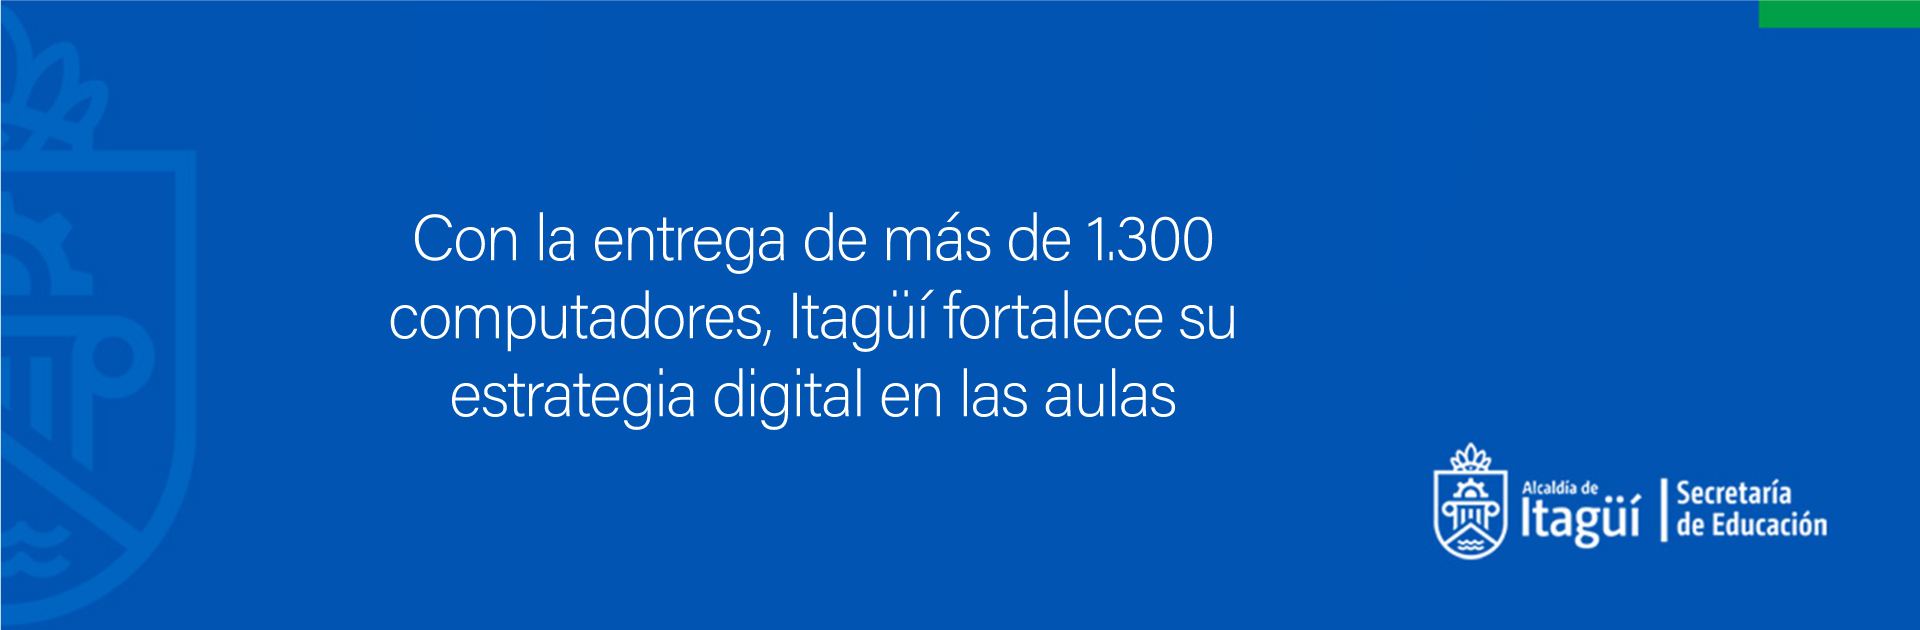 Con la entrega de más de 1.300 computadores, Itagüí fortalece su estrategia digital en las aulas